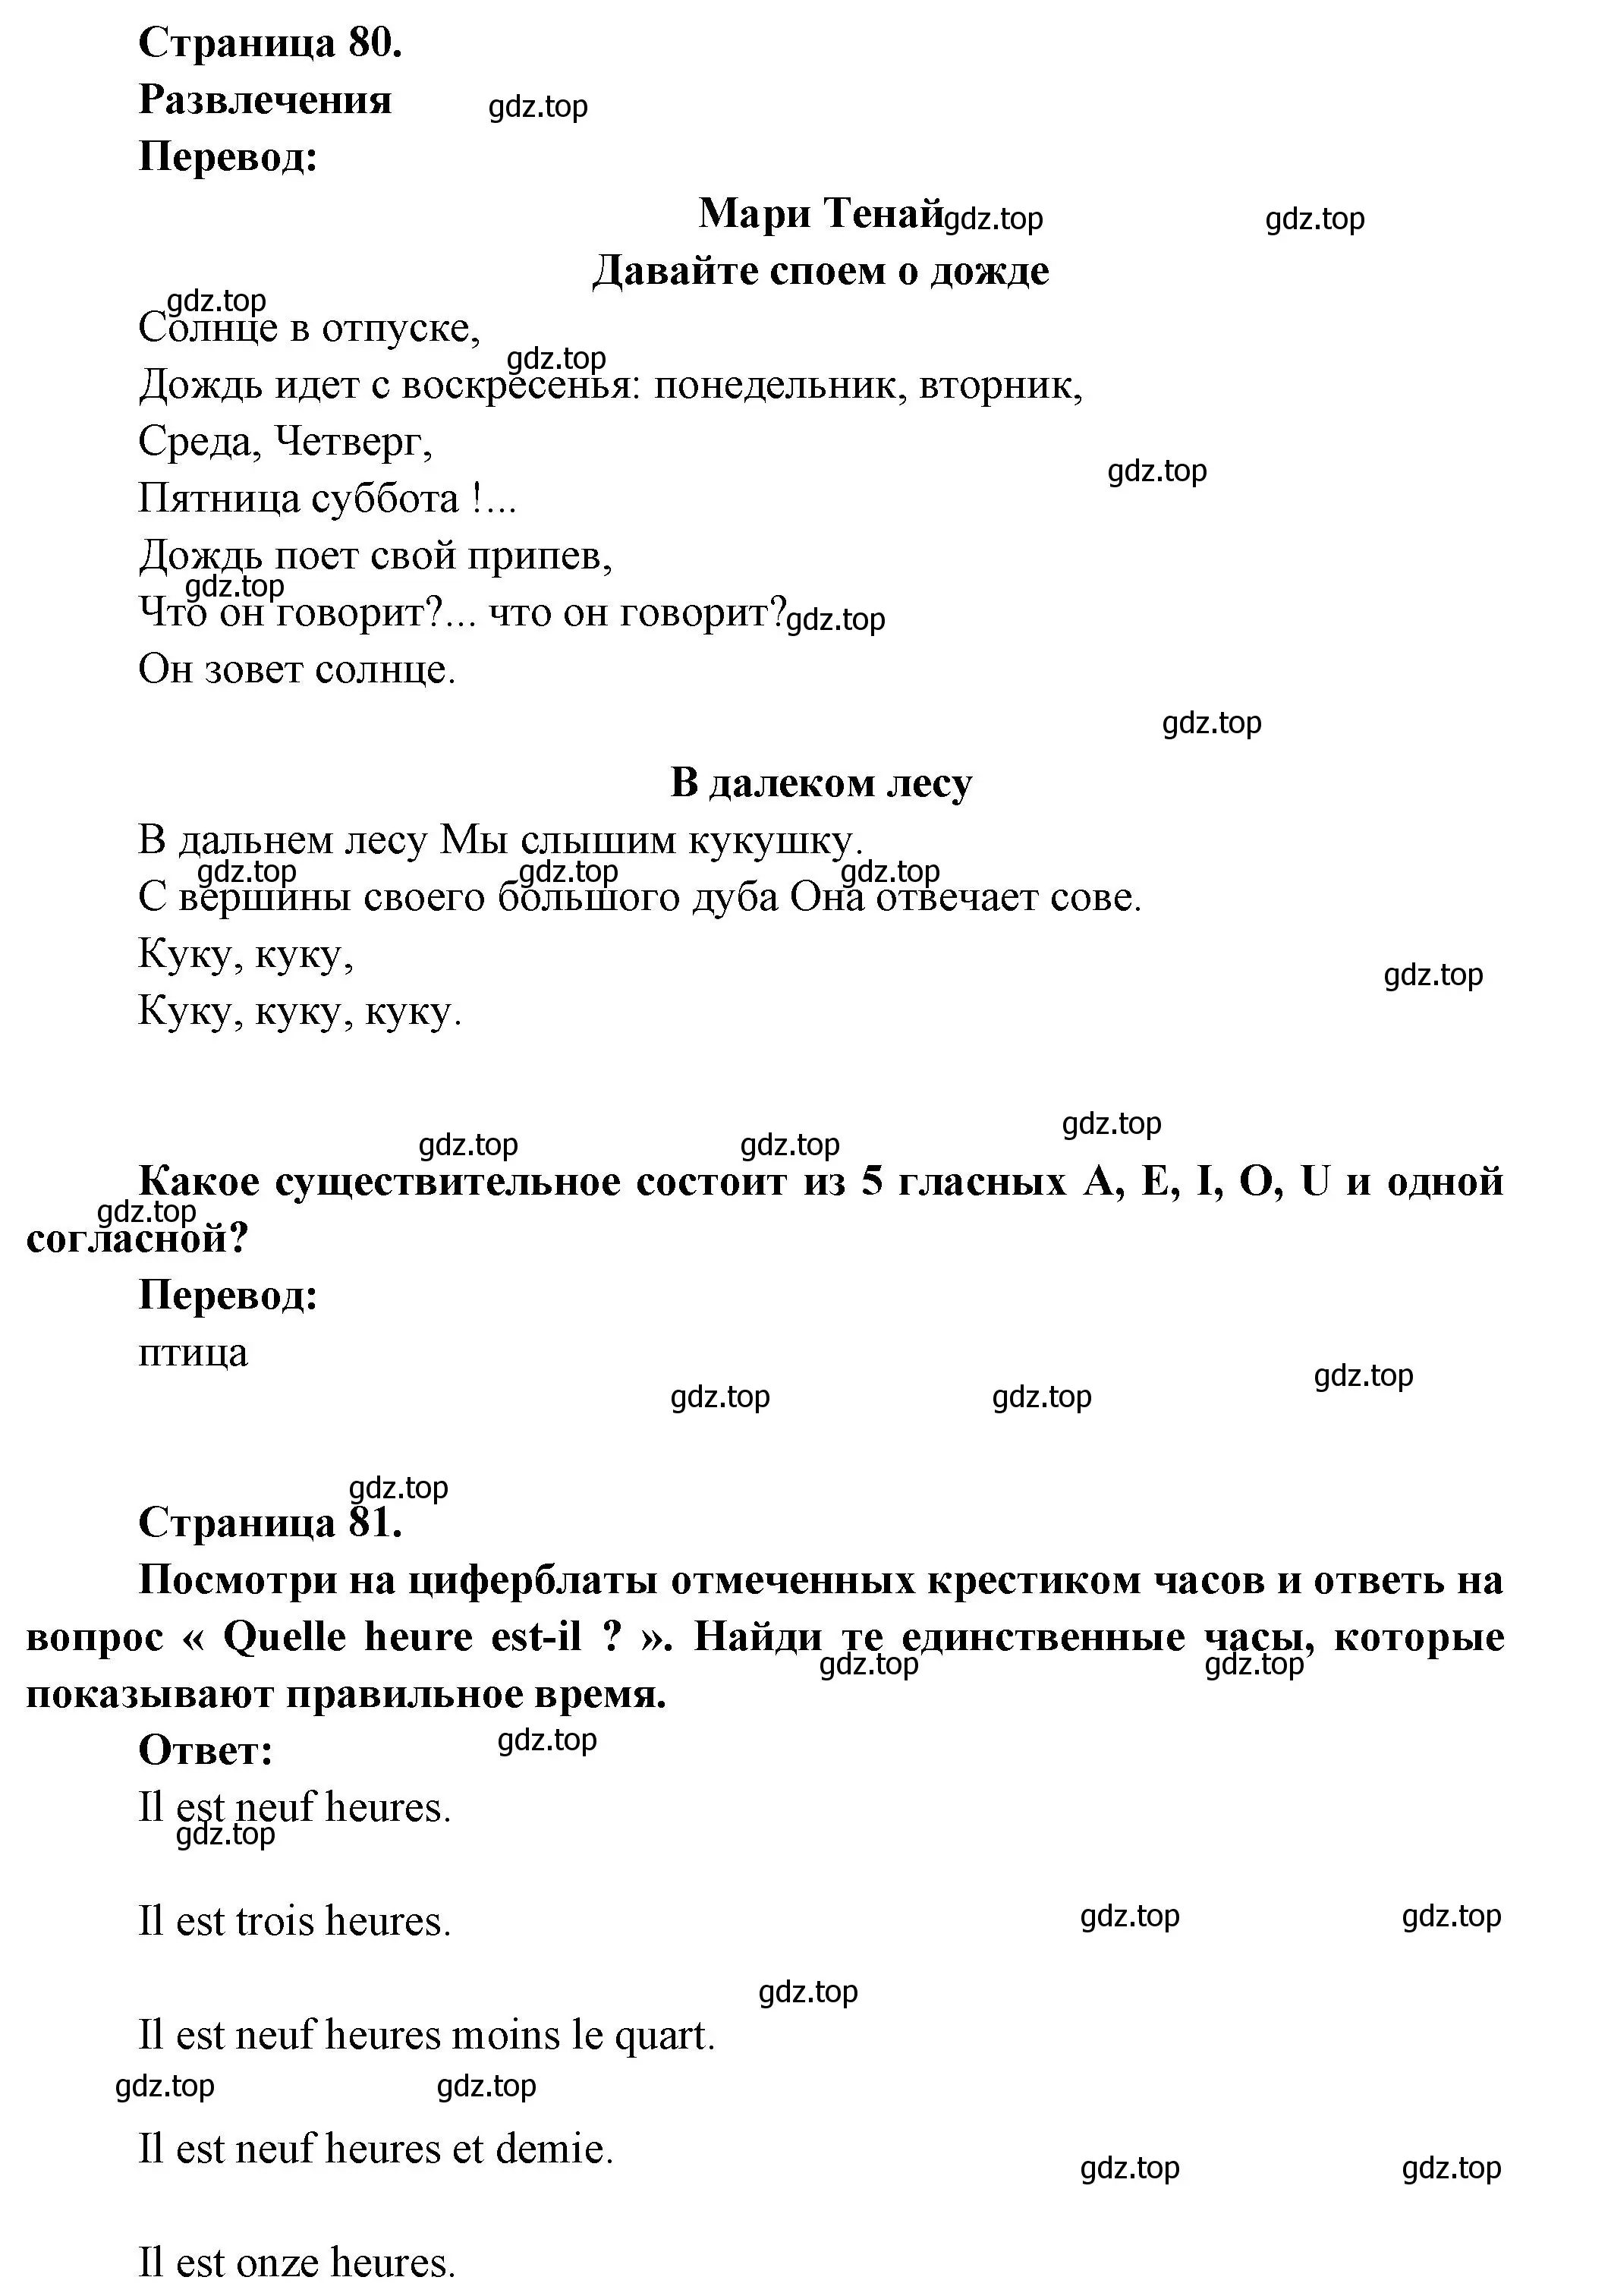 Решение номер 29 (страница 79) гдз по французскому языку 5 класс Береговская, Белосельская, учебник 1 часть